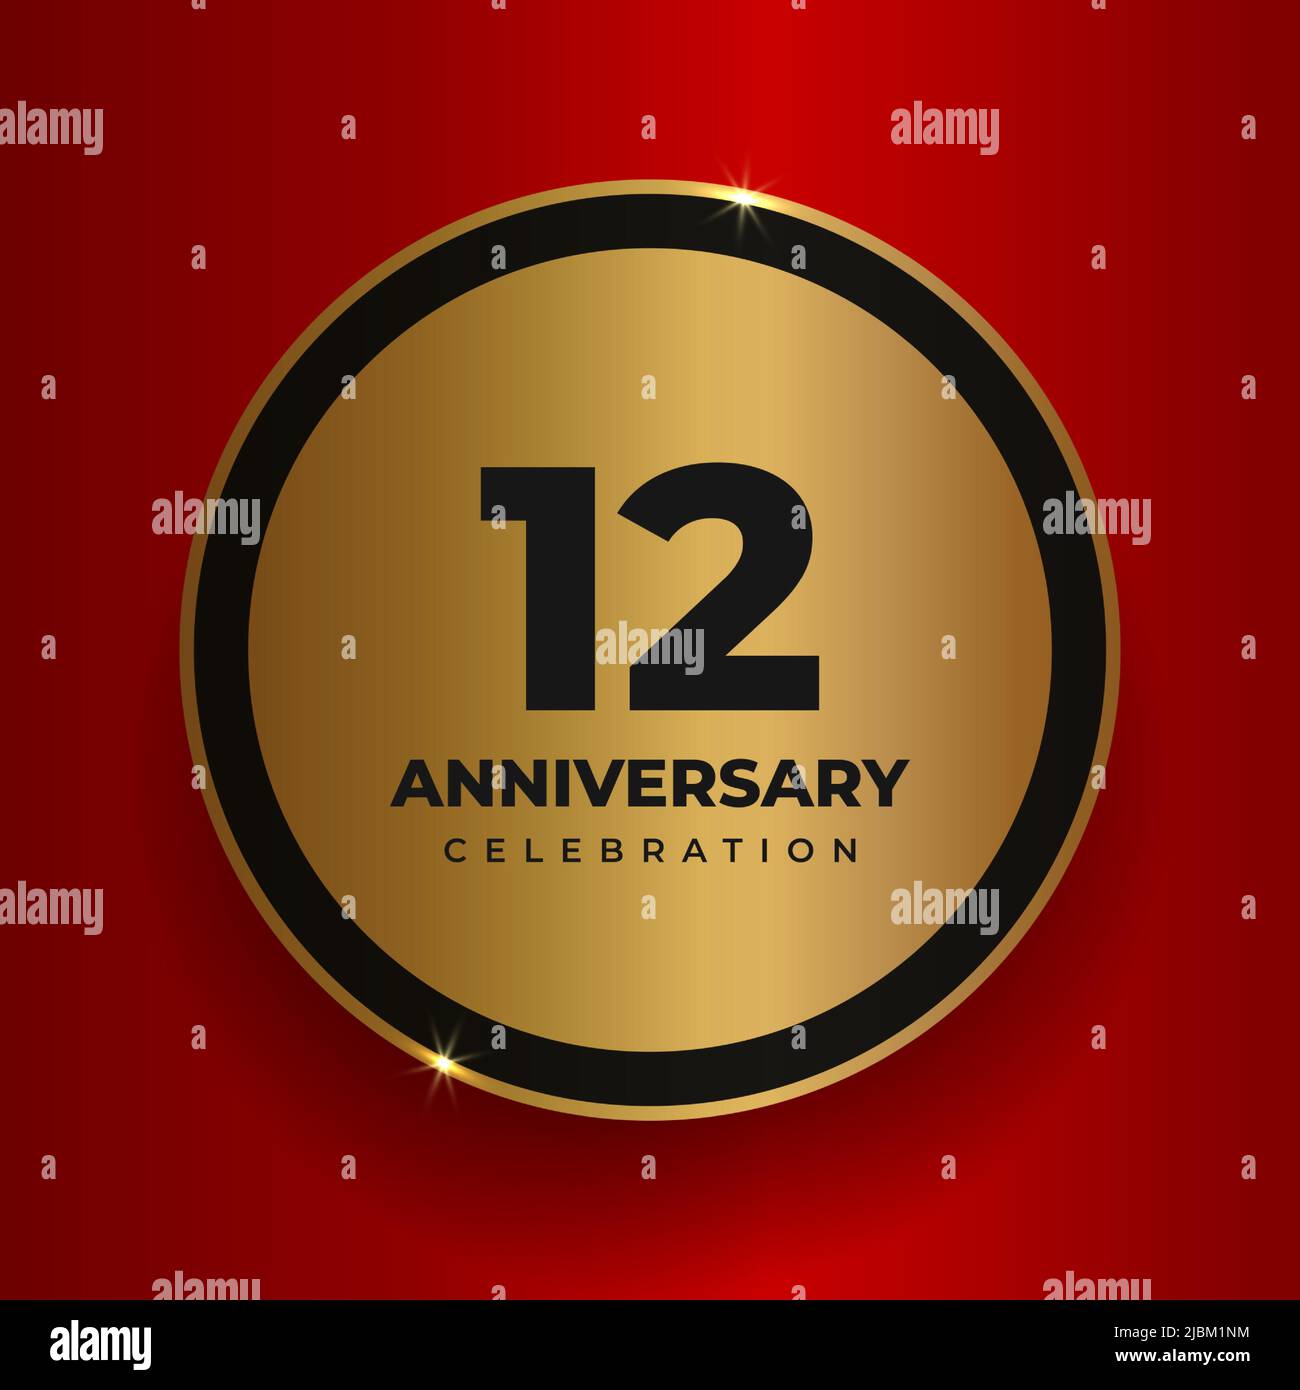 célébration de 12 ans. Modèle d'affiche de fête anniversaire 12th. Cercle doré vectoriel avec chiffres et texte Illustration de Vecteur